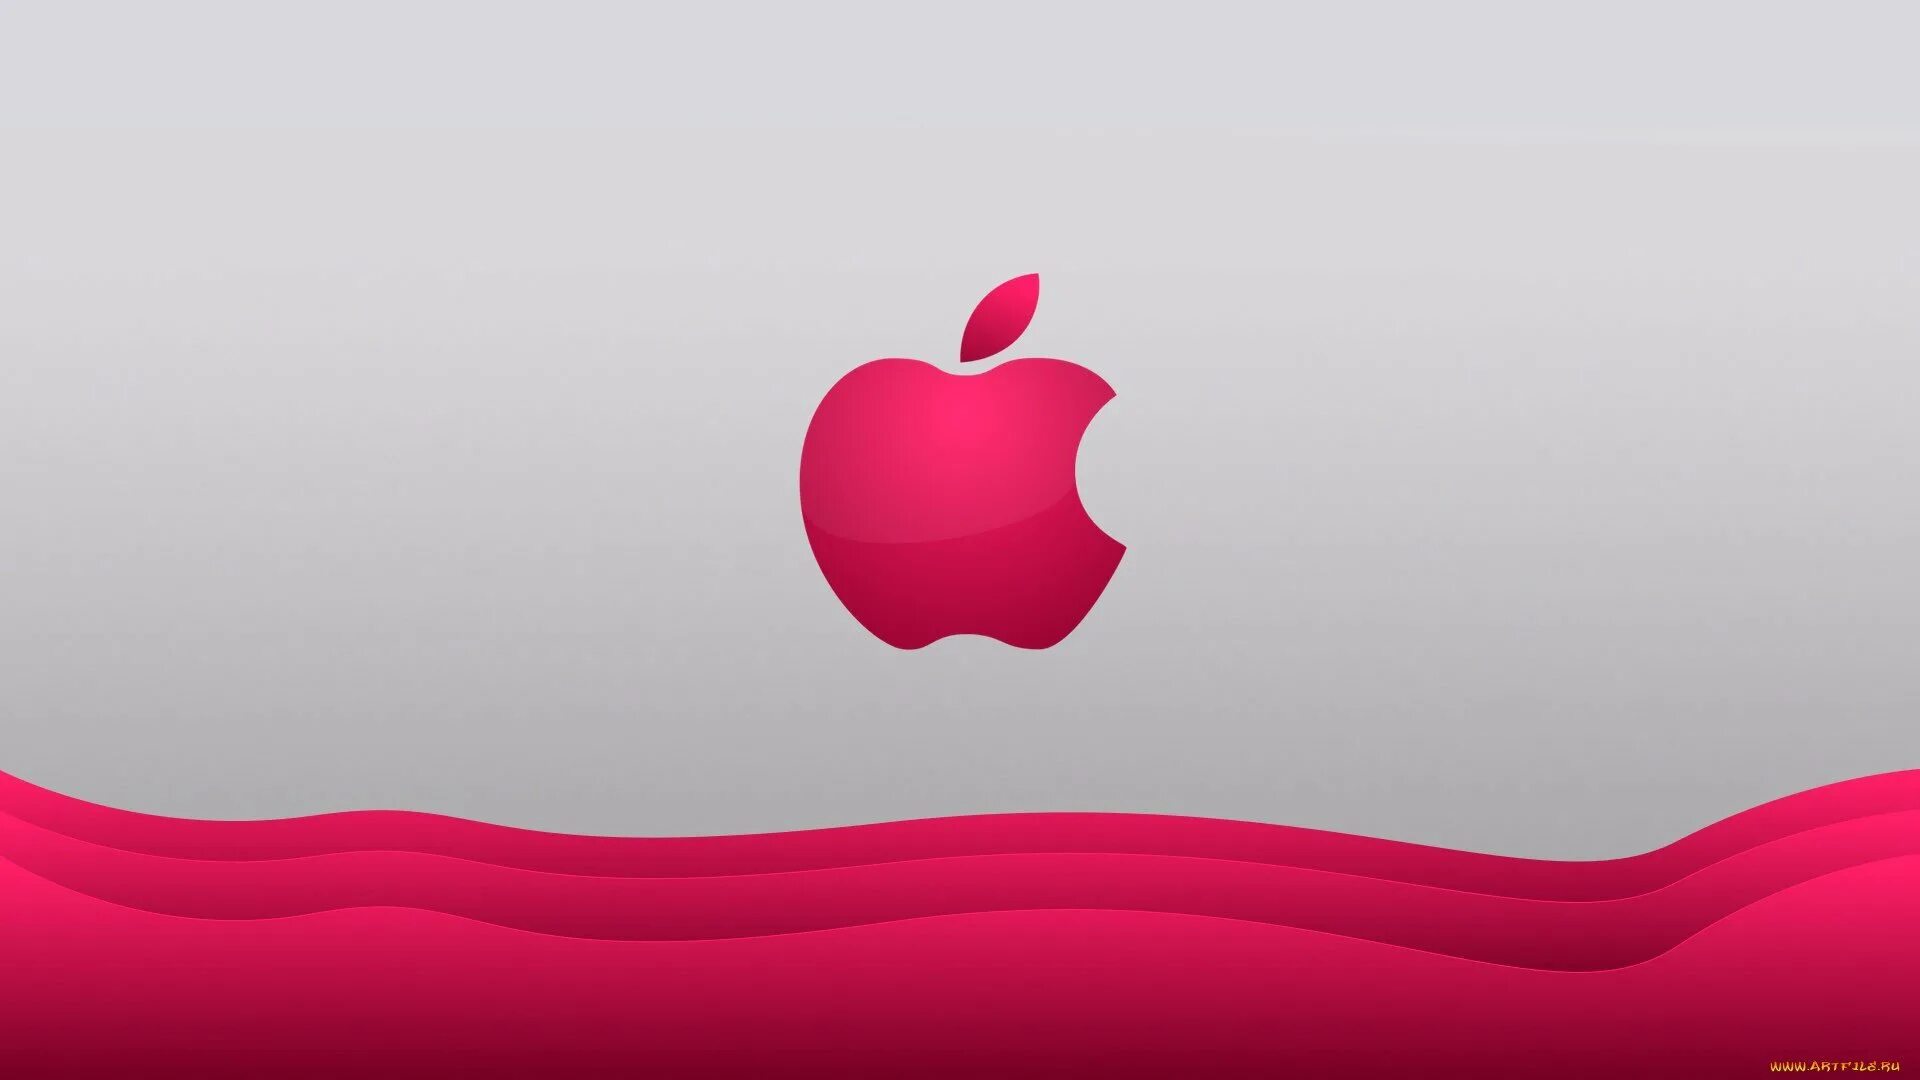 Обои эппл. Обои Apple. Обои на рабочий стол Apple. Apple розовый. Фон Apple для рабочего стола.